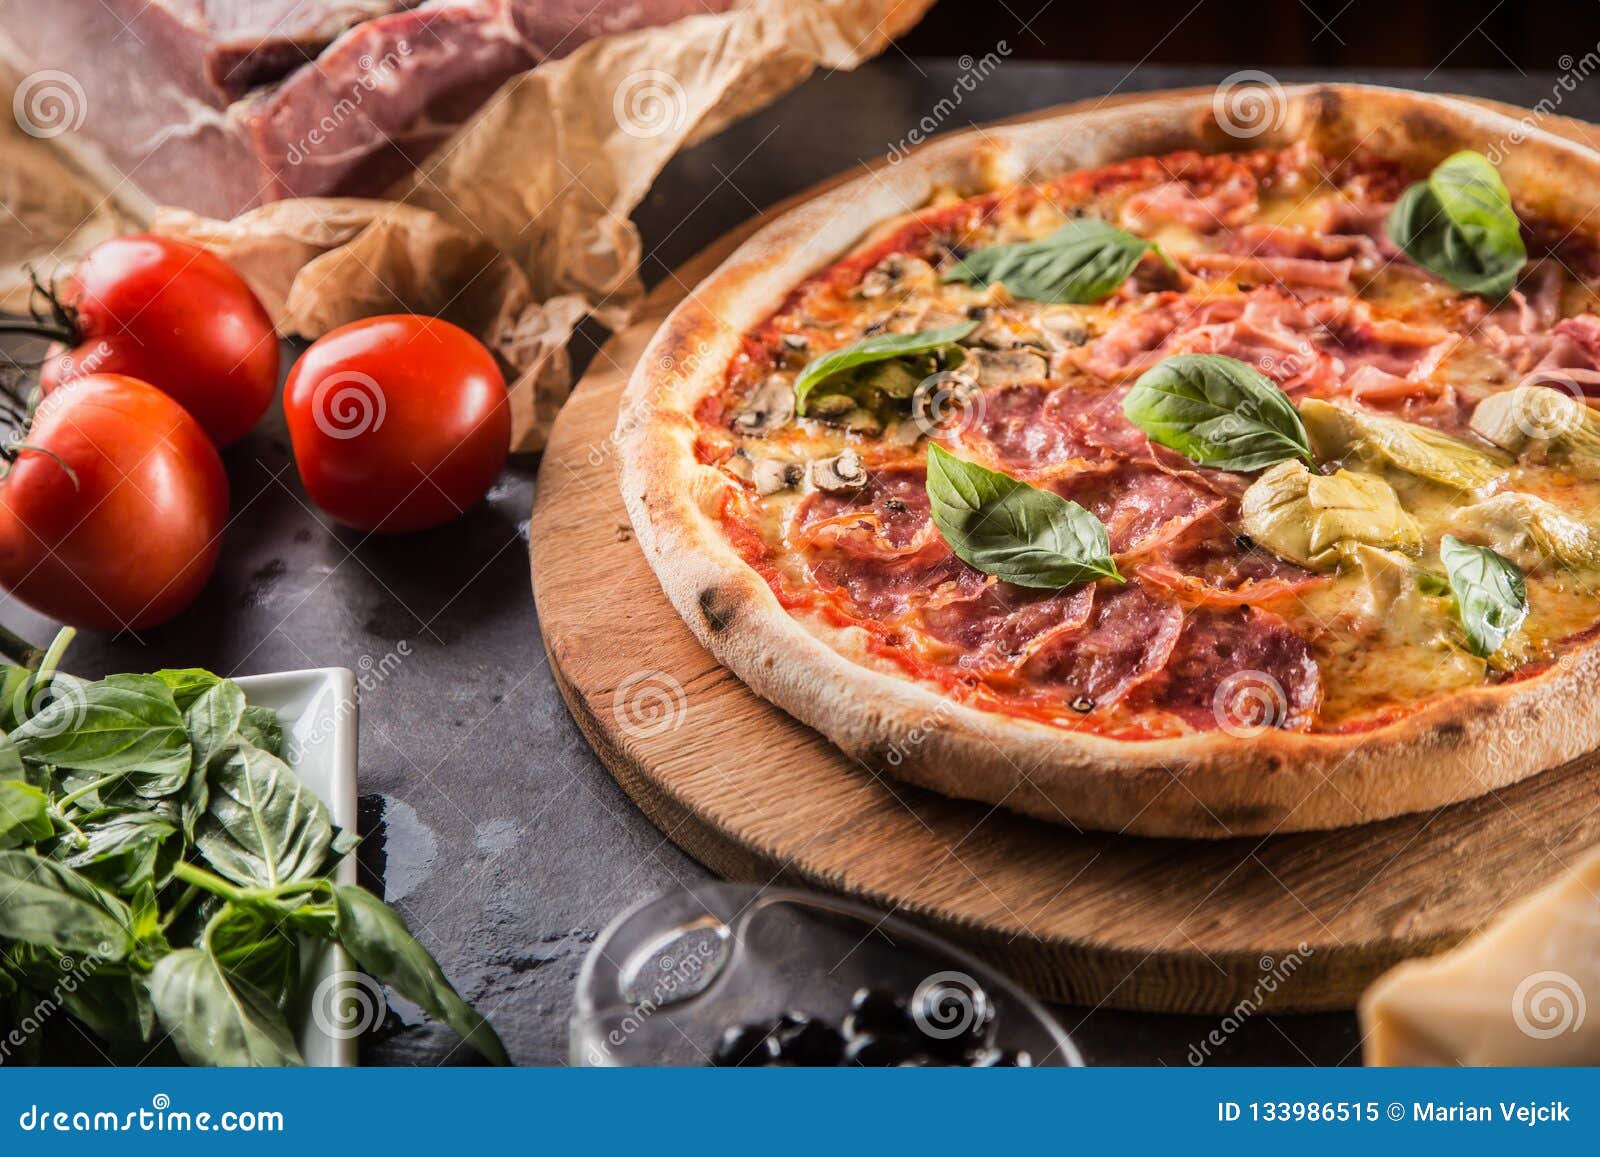 итальянская пицца четыре сезона фото 85